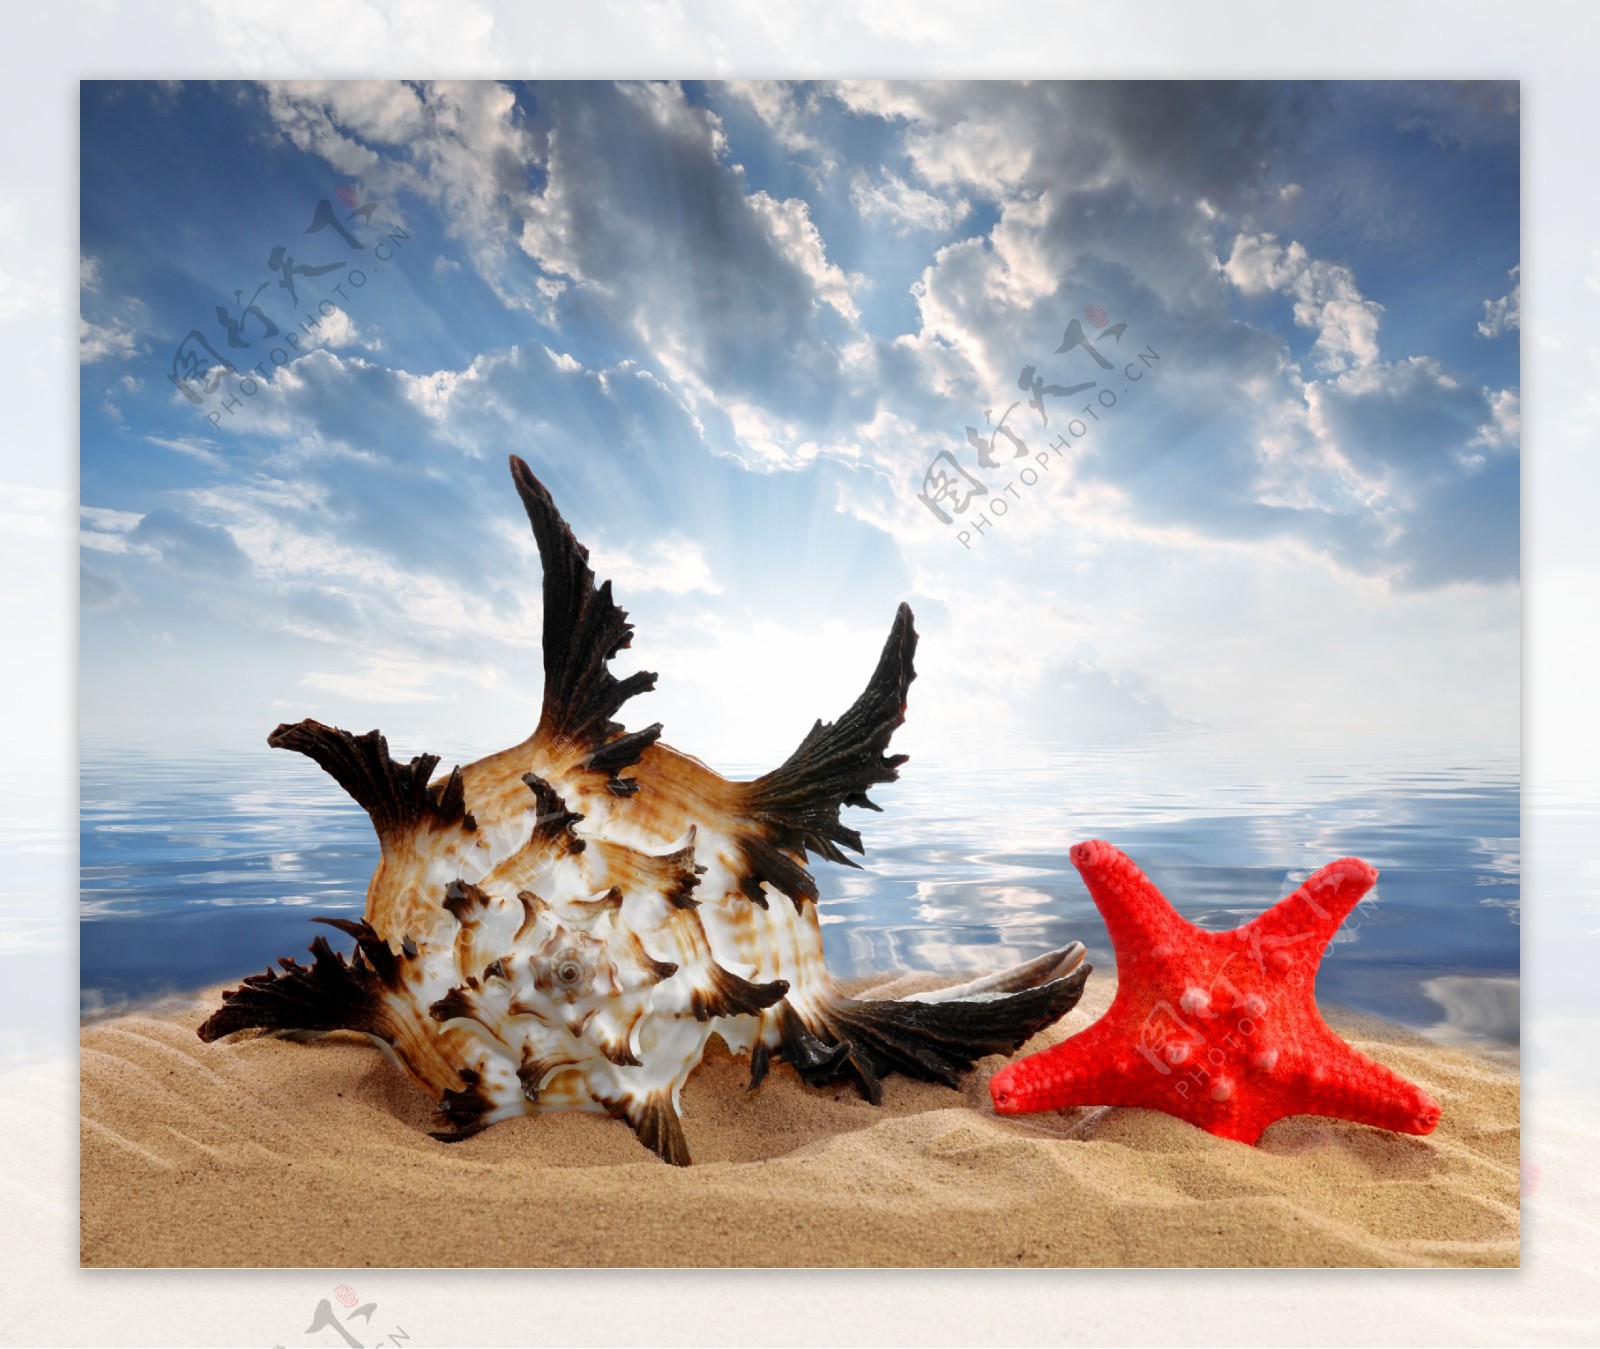 沙滩上的红色海星和海螺图片素材